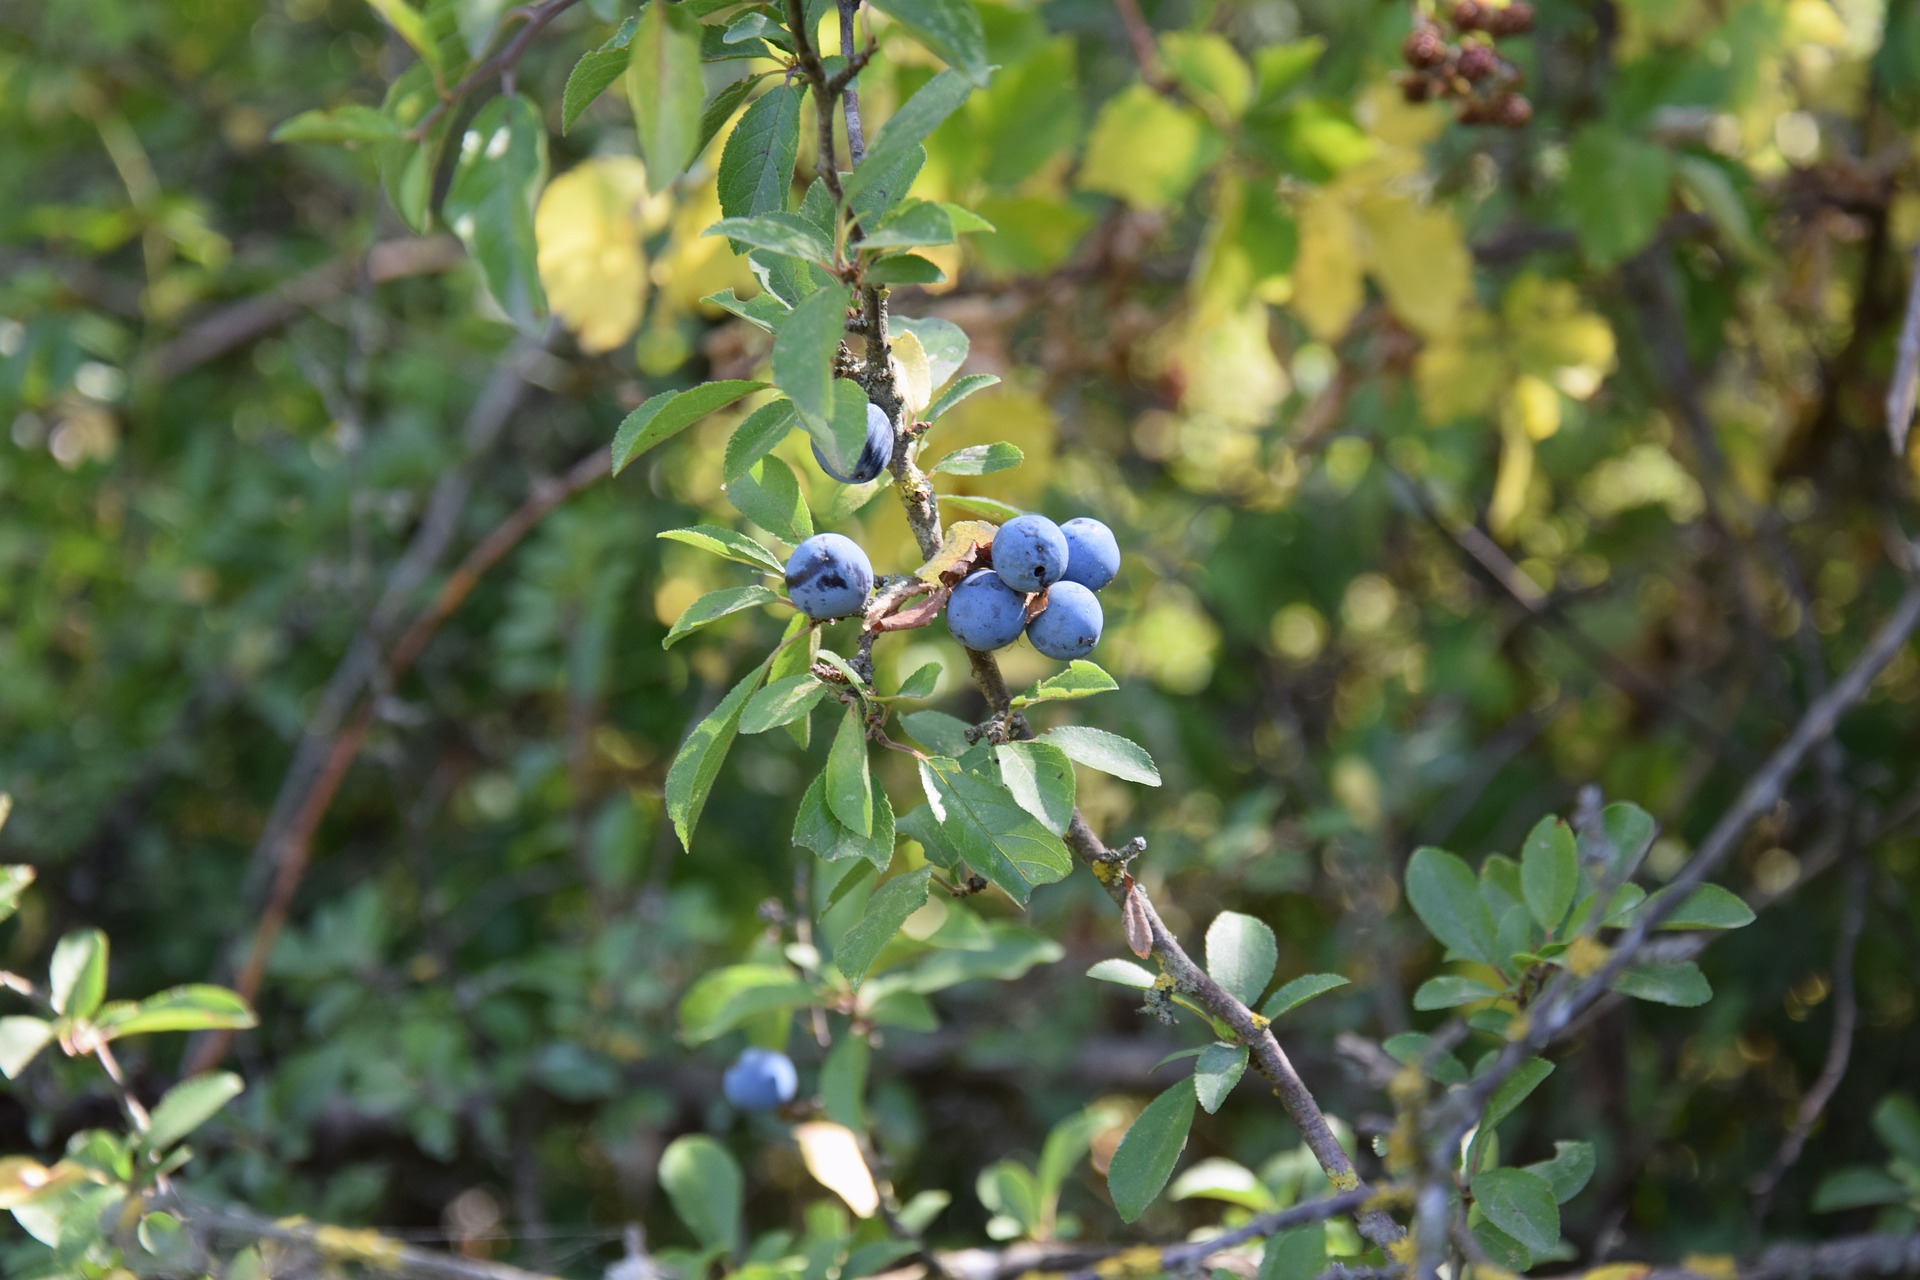 <h1>Trnka obecná <i>(Prunus spinosa)</i></h1><br />
Na obrázku jsou vyfoceny zralé modré plody trnky na větvičce s listy. V pozadí porost křovin.